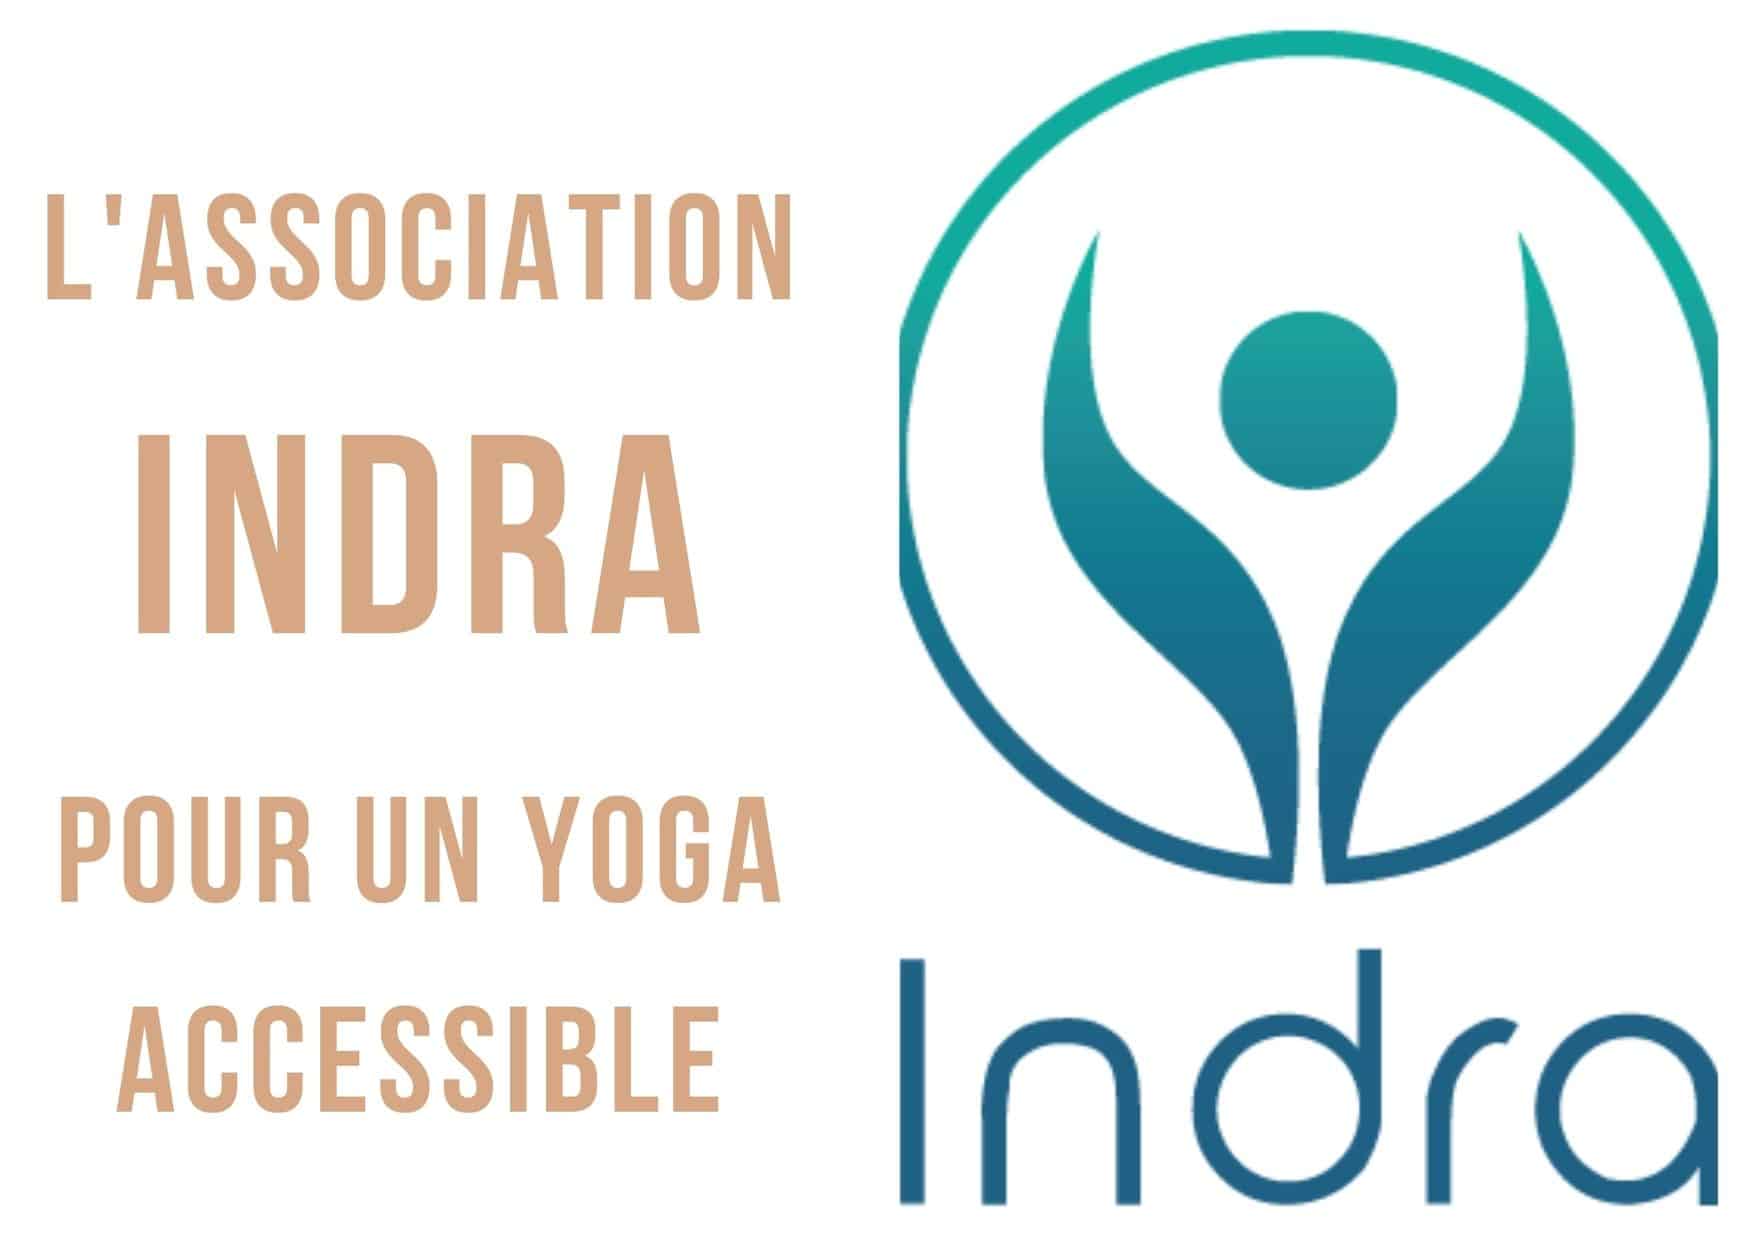 association indra yoga accessible à tous et toutes